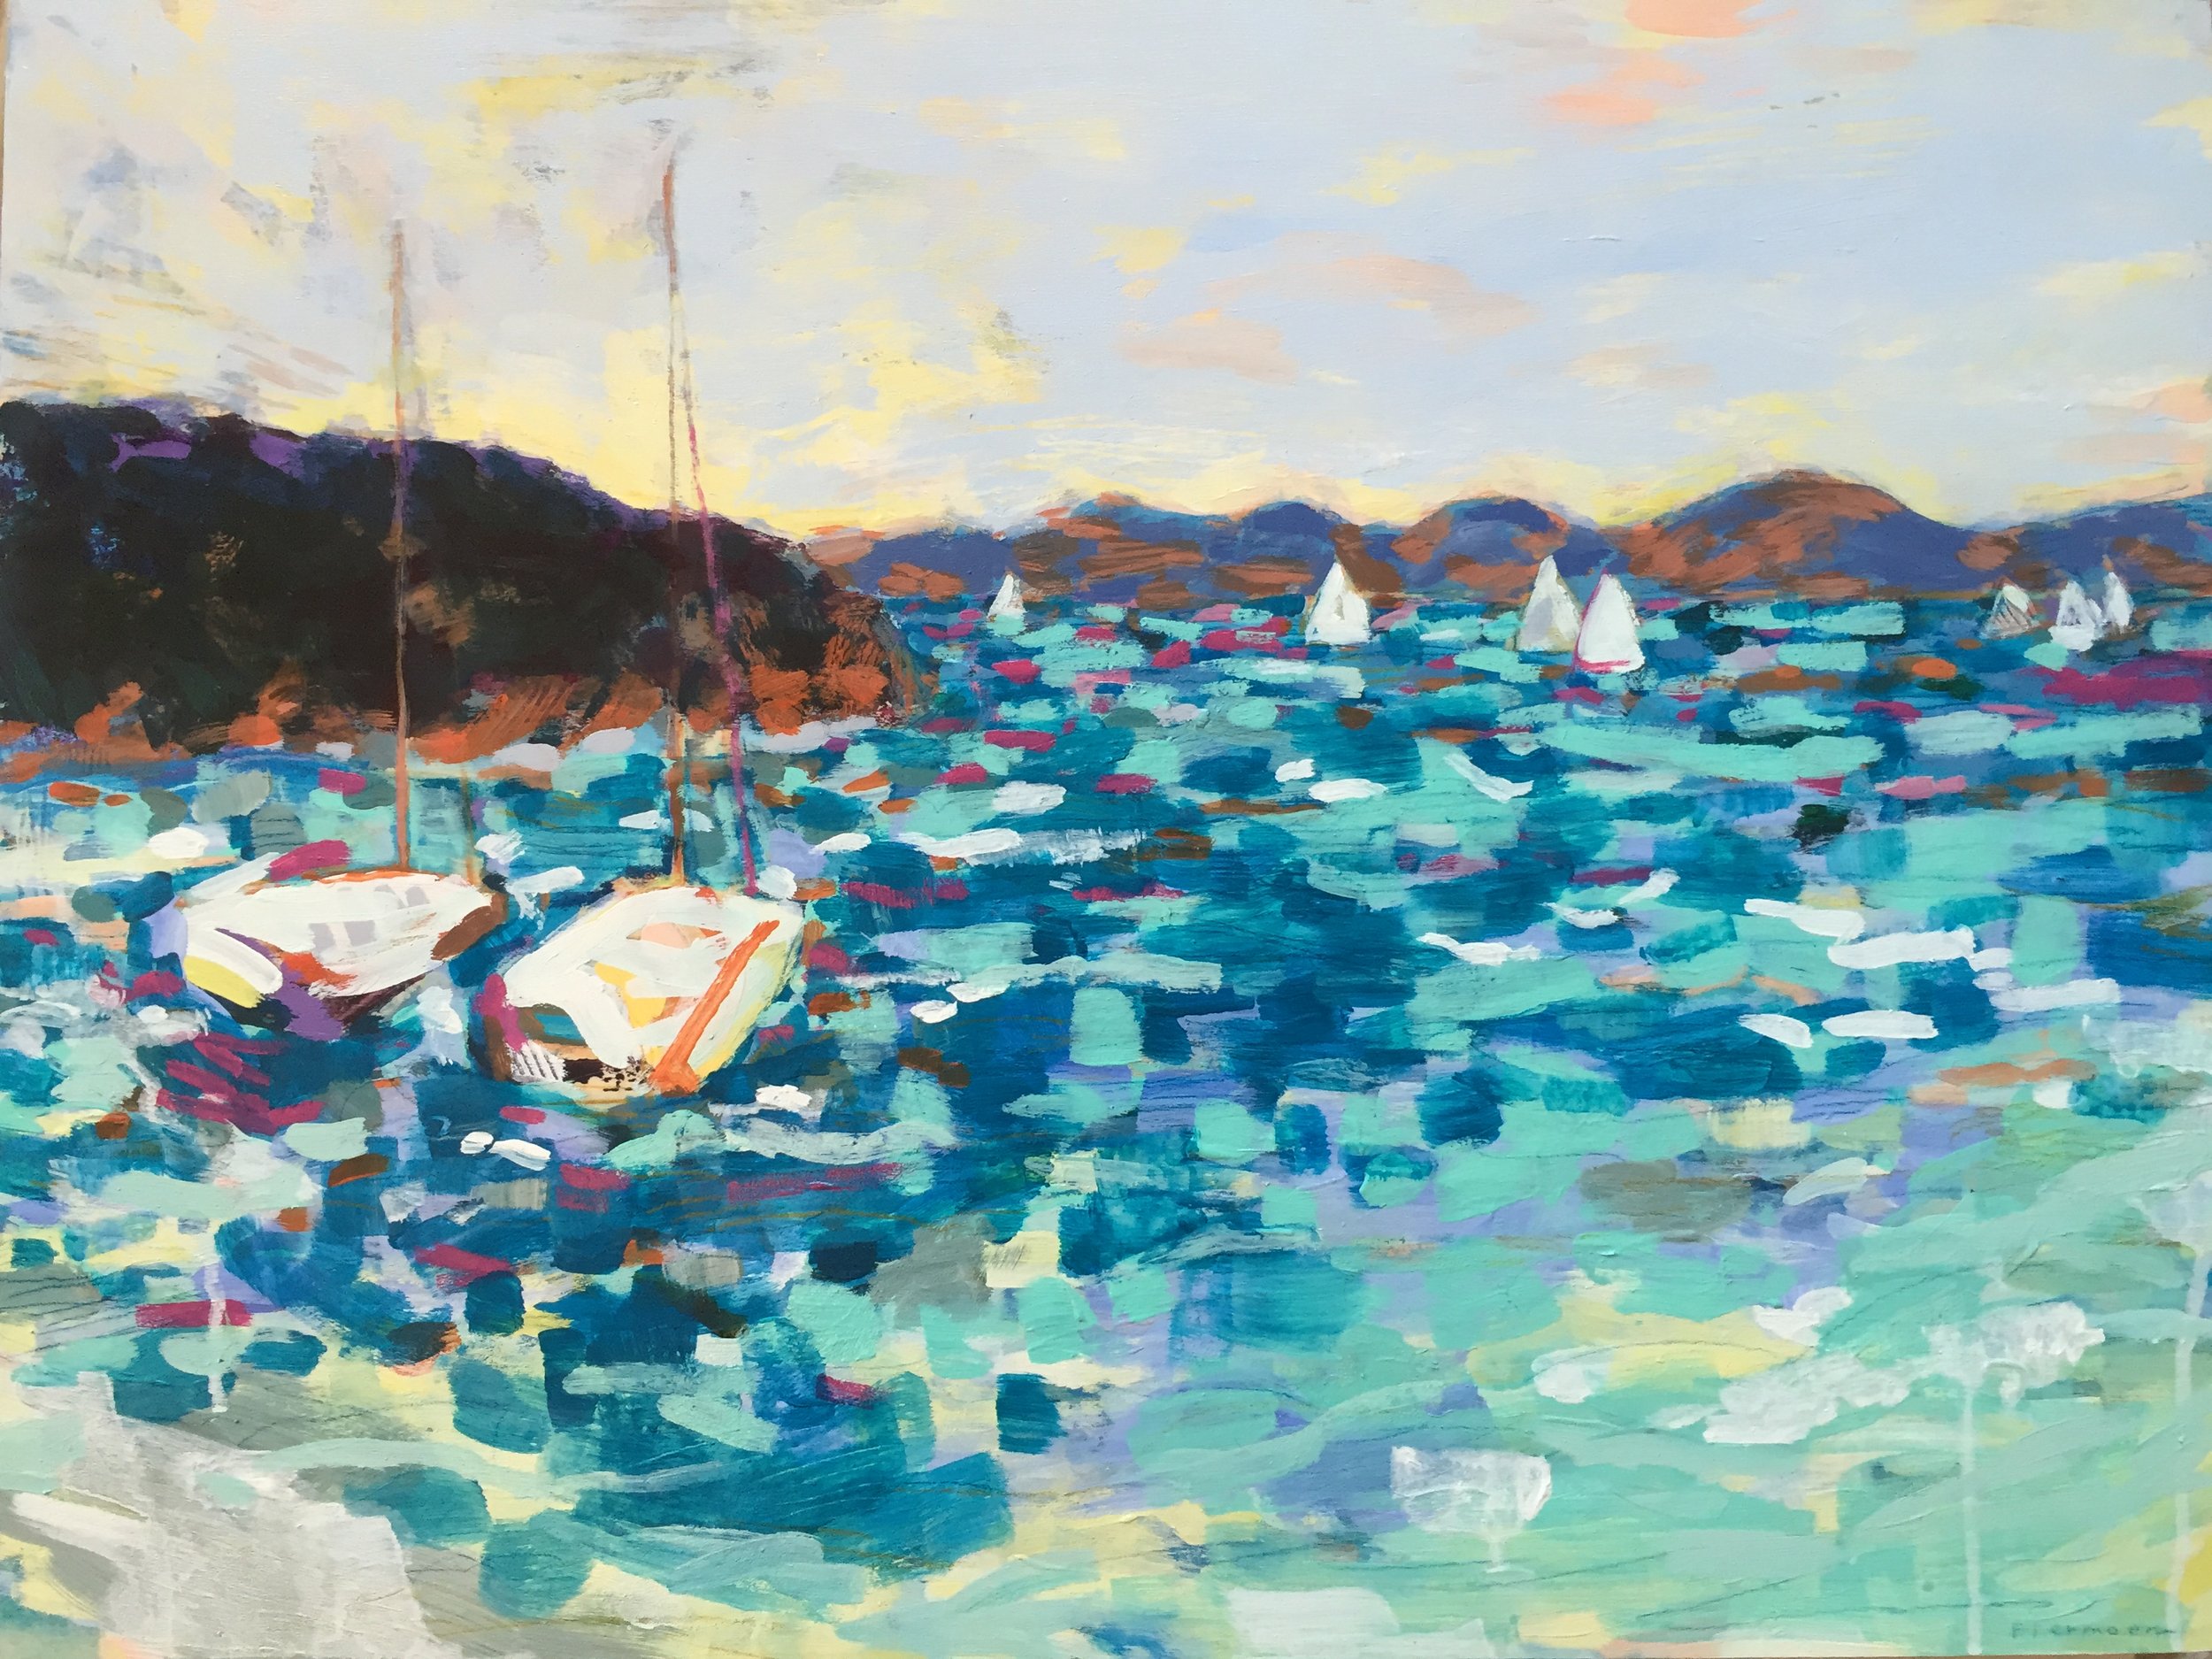 Sails in Blue Harbor